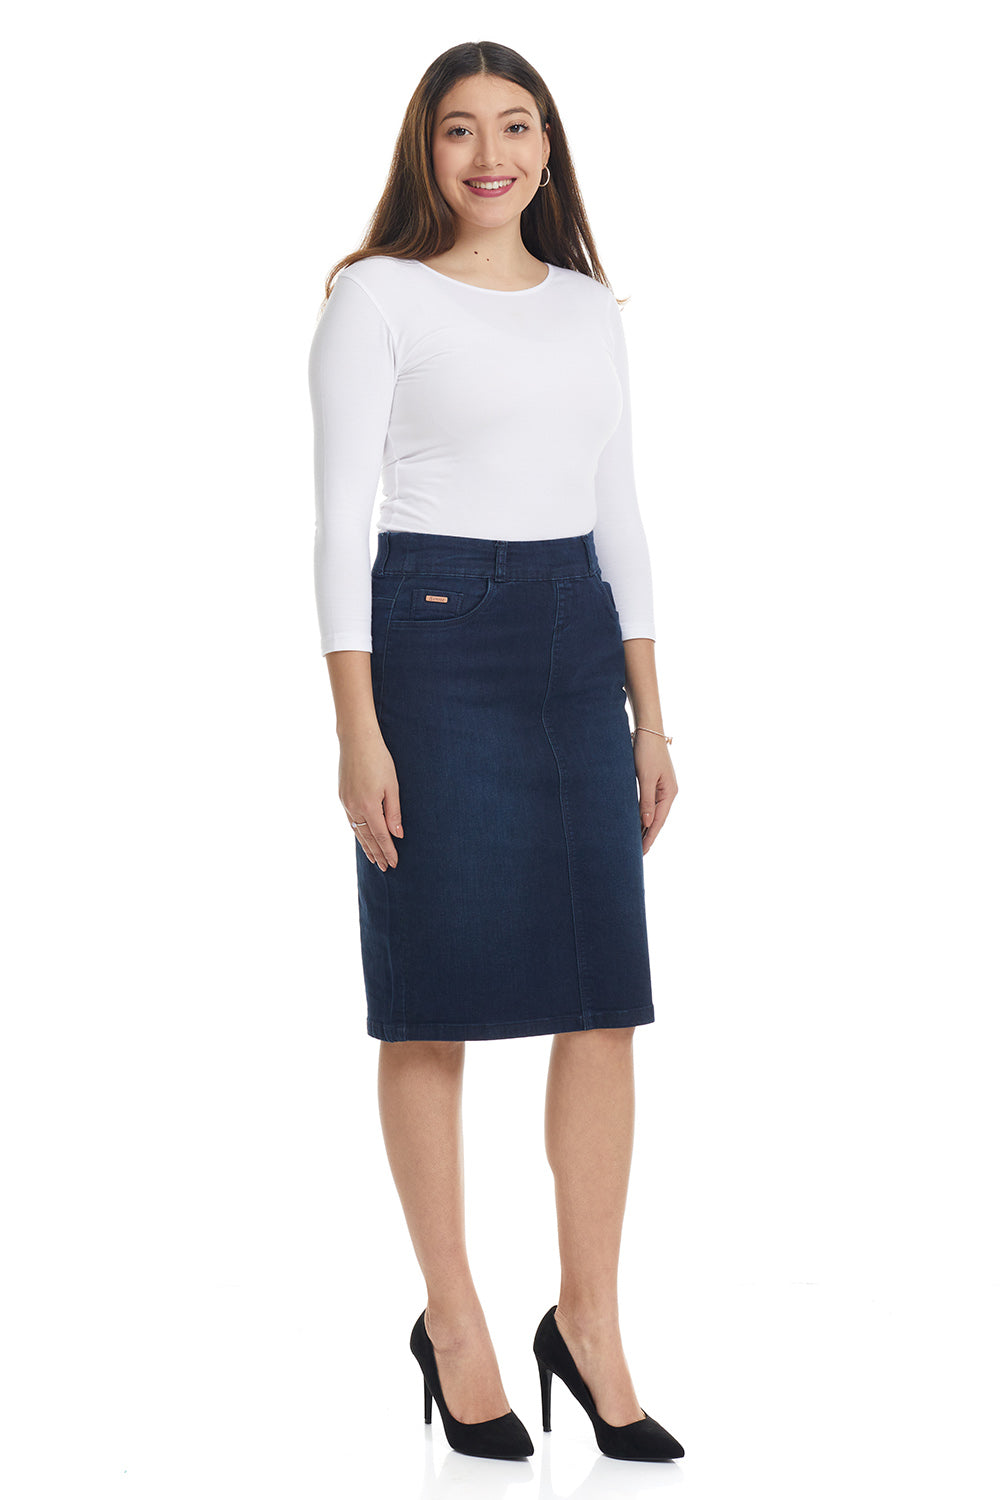 Esteez MANHATTAN Denim Skirt - Straight Knee Length Pull On Stretchy Jean Skirt for WOMEN - DARK BLUE